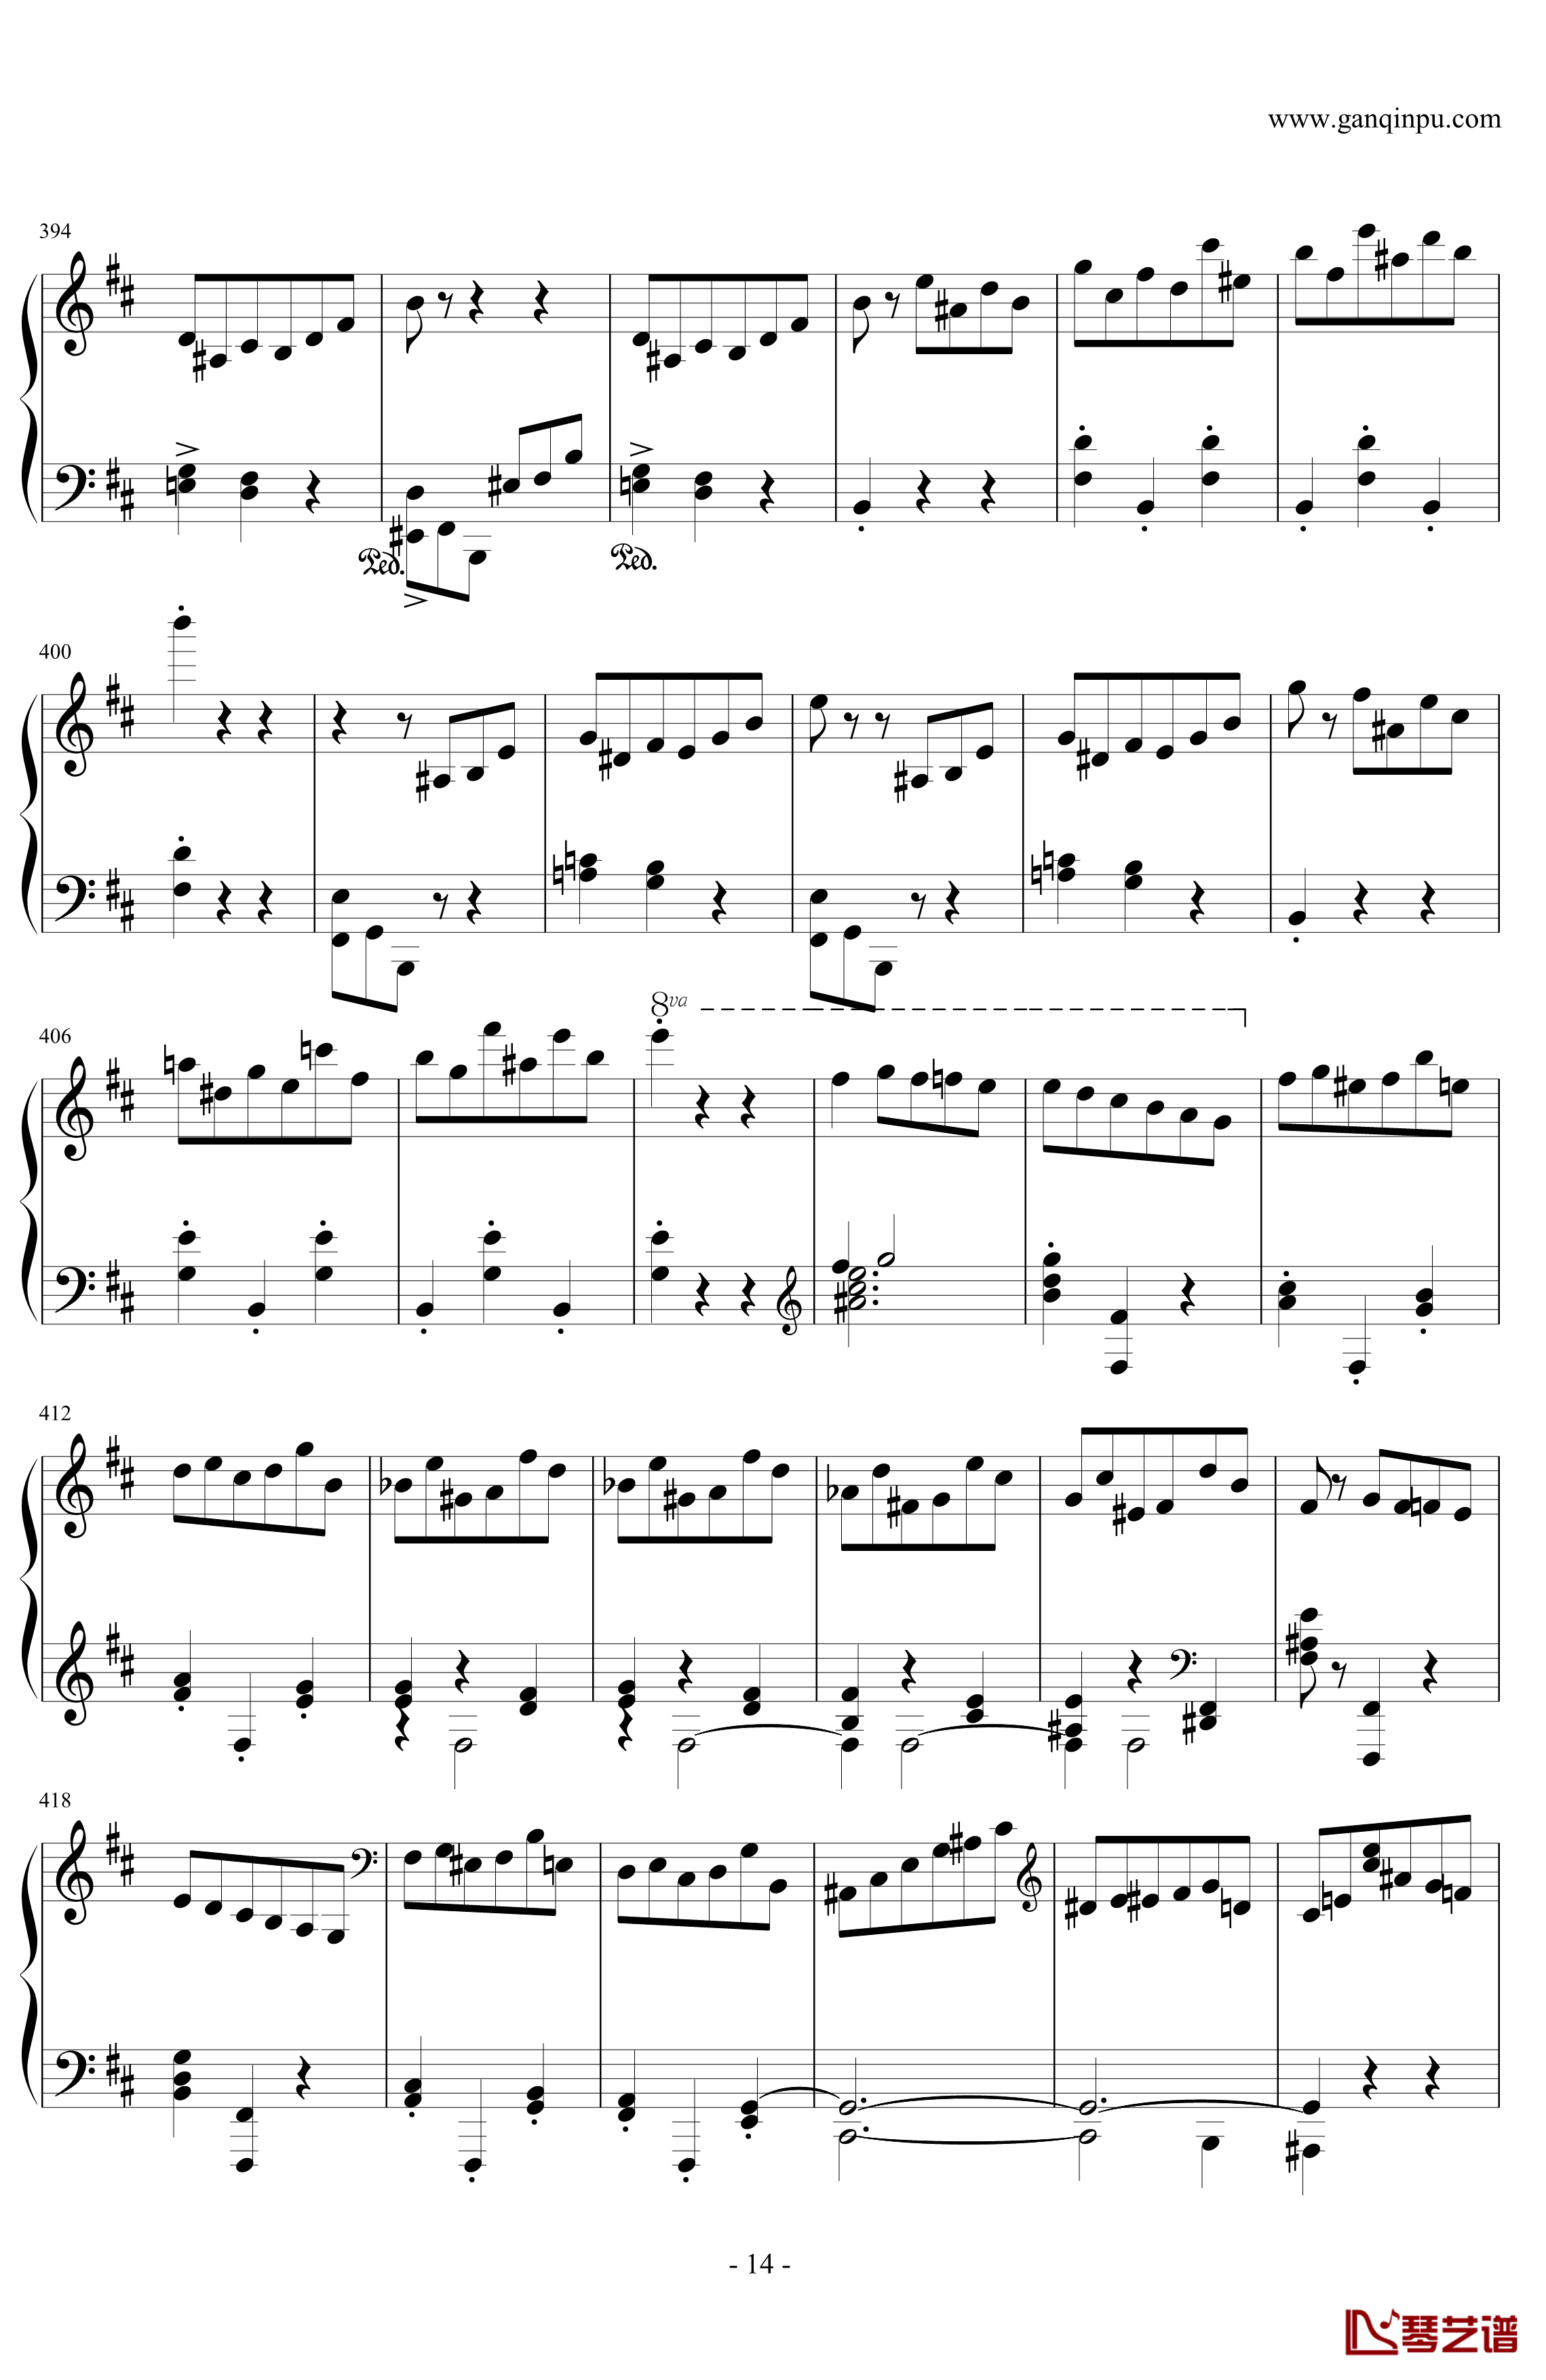 肖邦第一谐谑曲钢琴谱-肖邦-chopin14